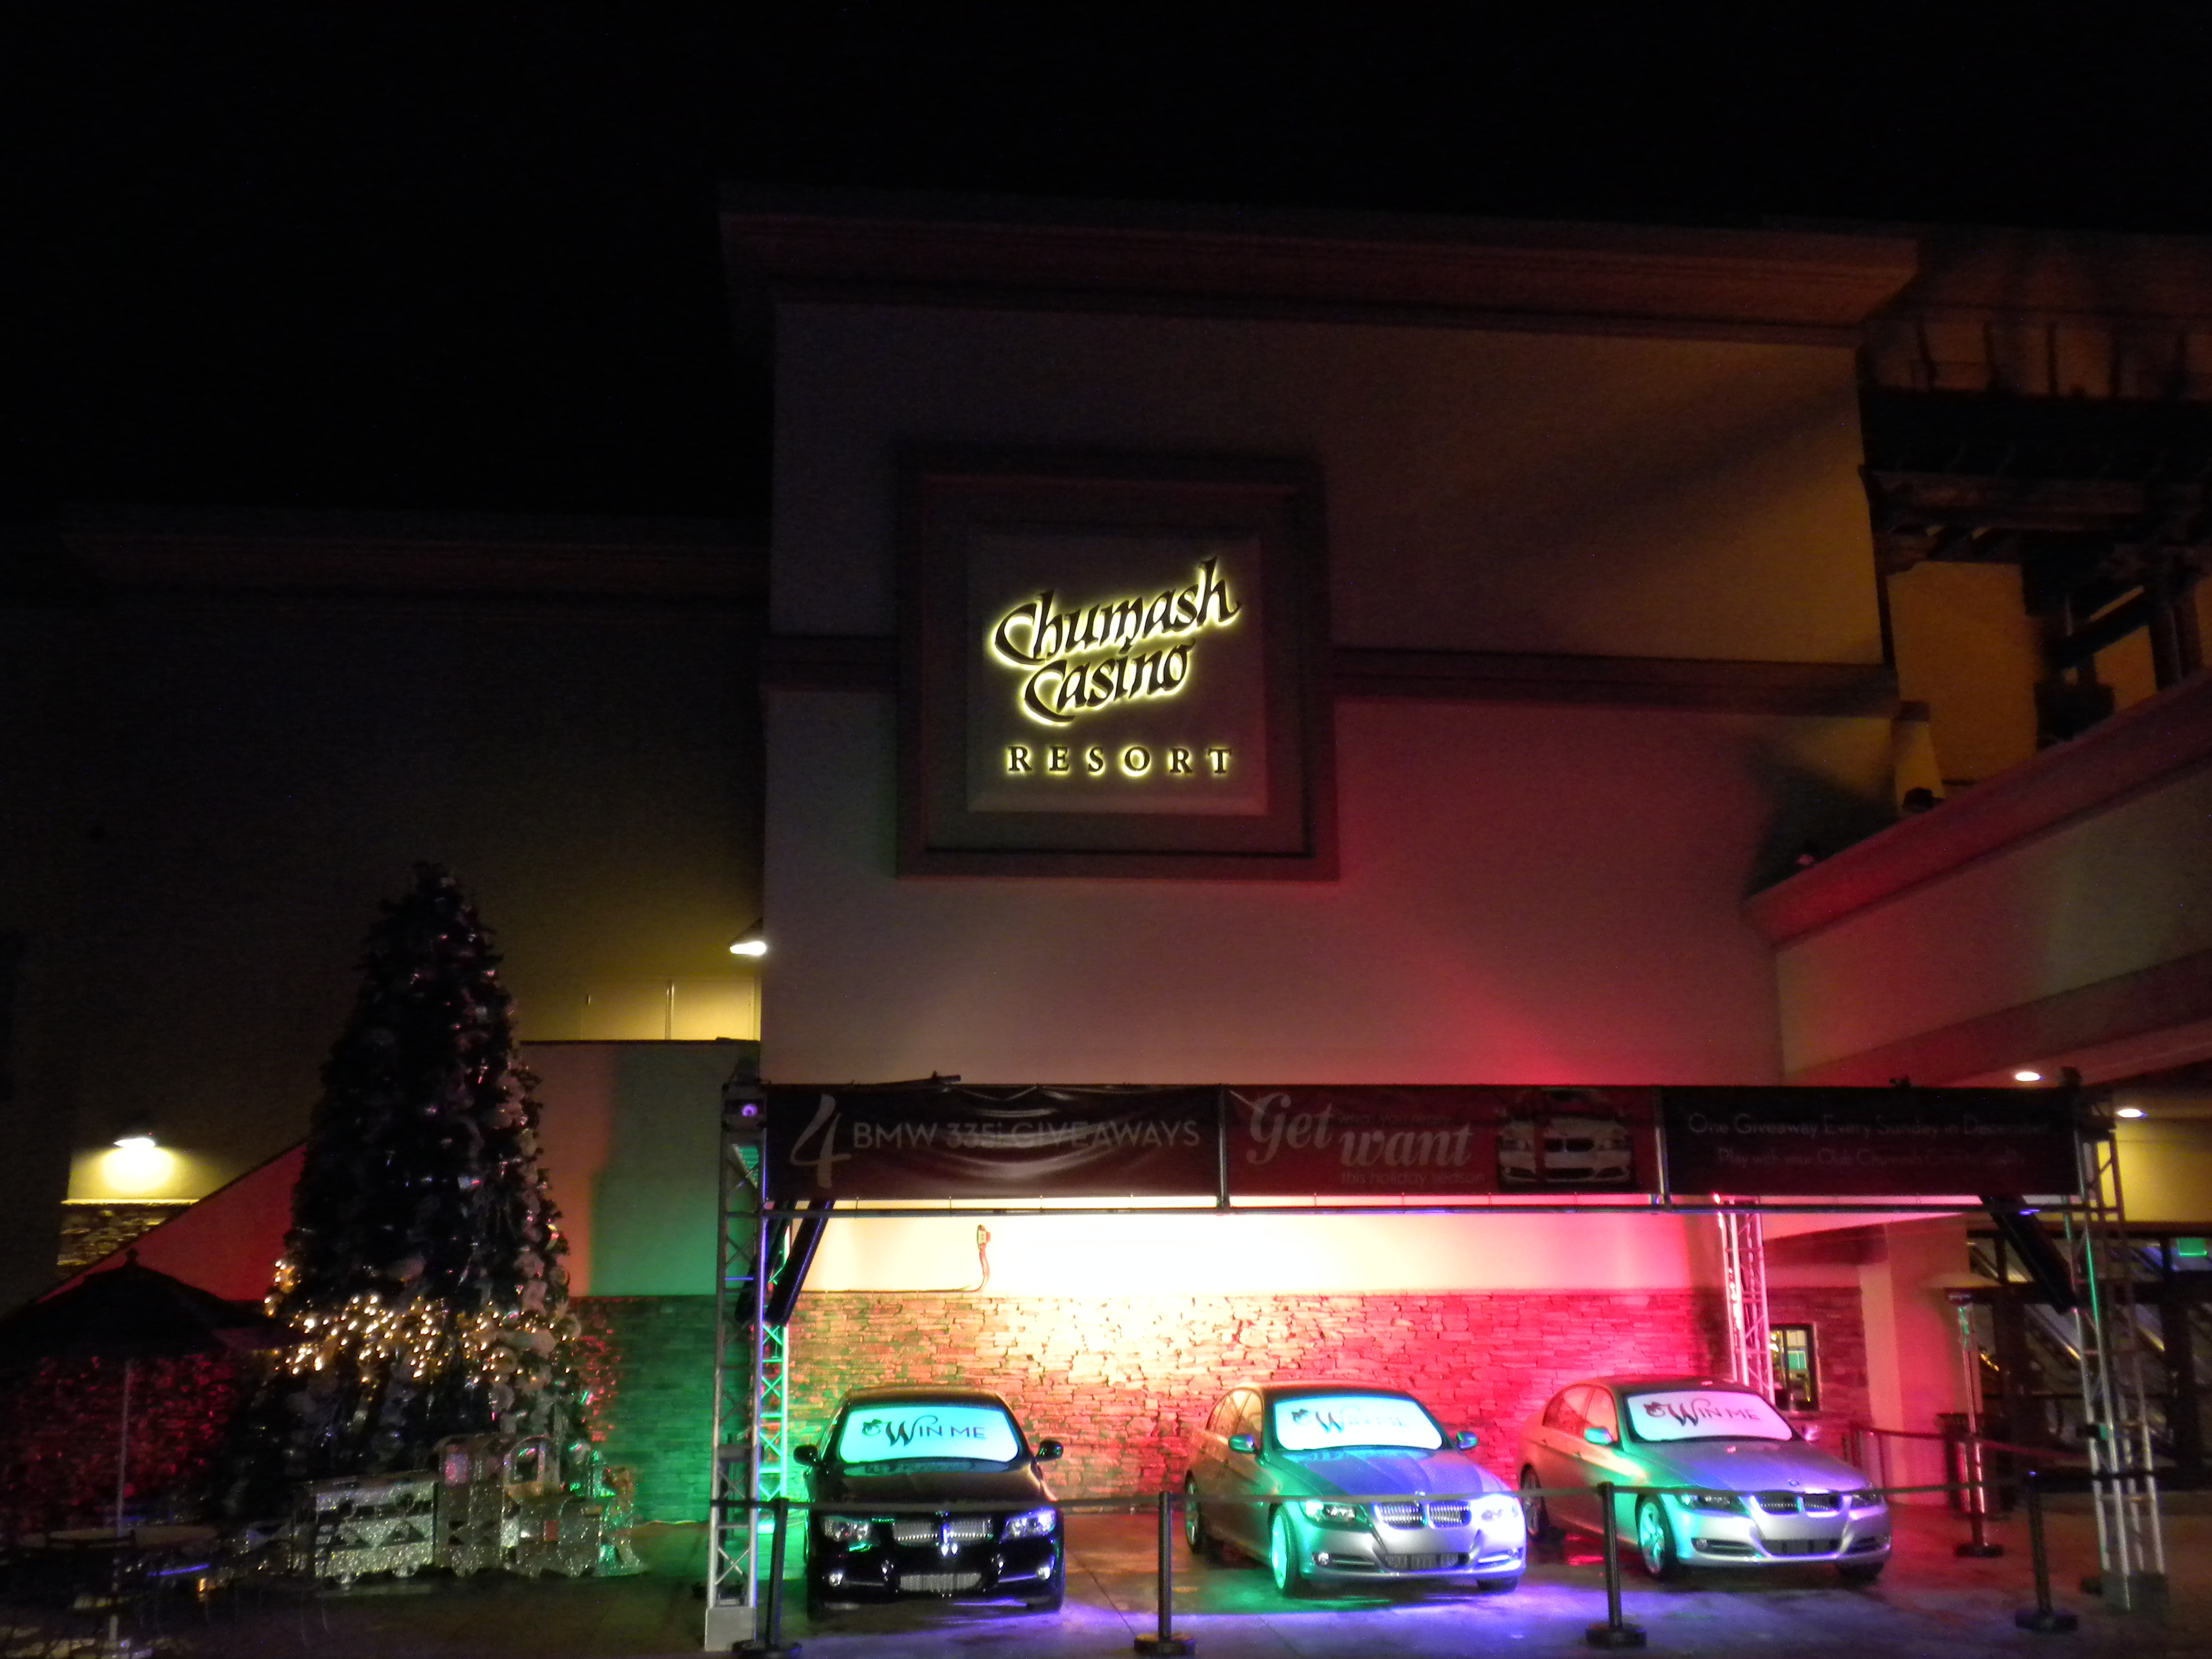 Chumash Casino Resort Entrance